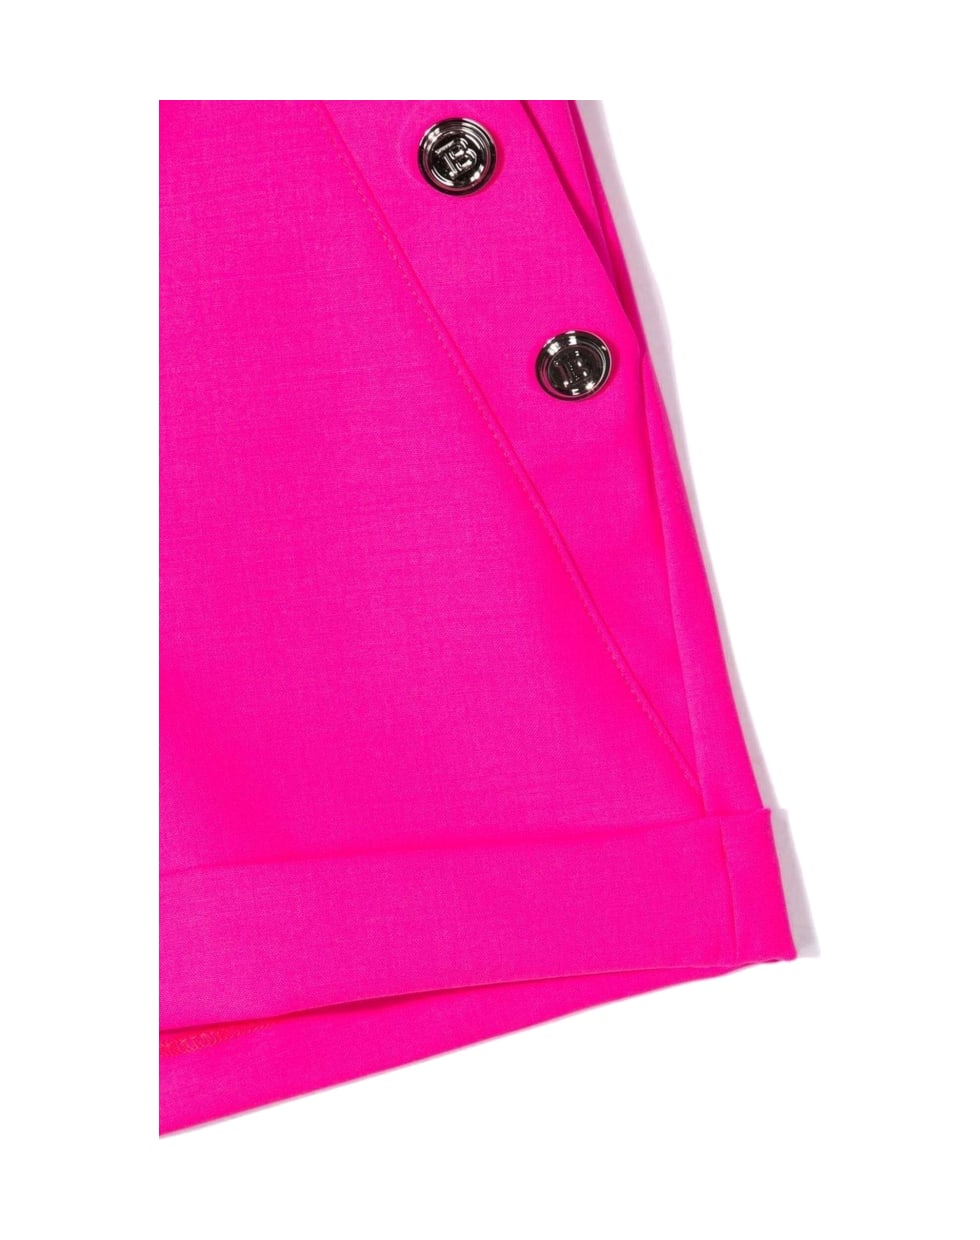 Balmain Fuschia Pink Virgin Wool Tailored Shorts - Fuxia